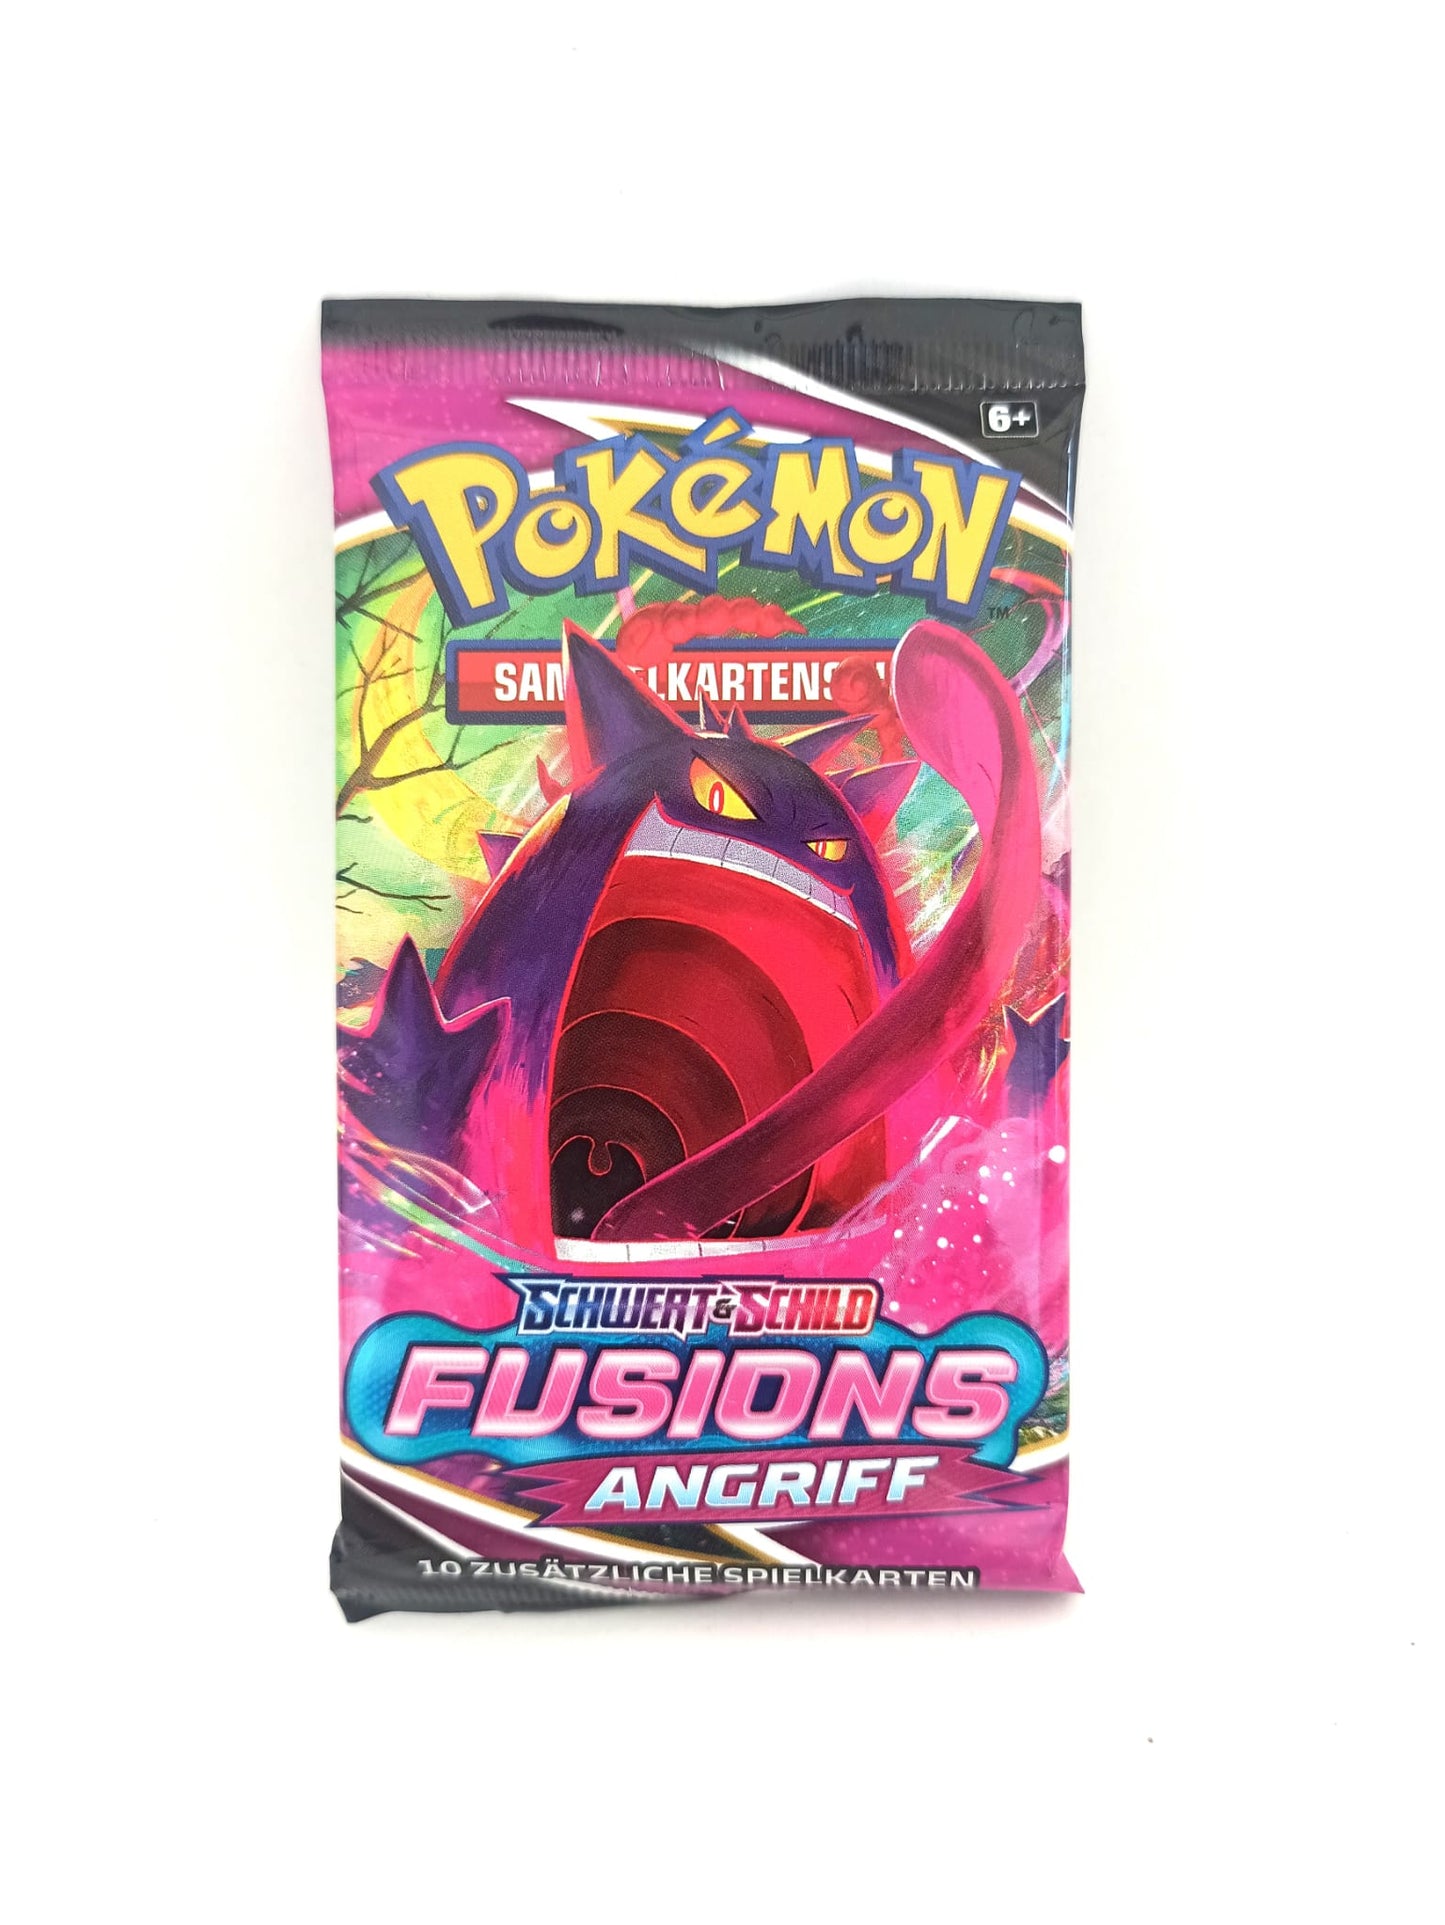 Pokémon Sammelkartenspiel - 1 x Booster Packung - Gengar Artwork - DEUTSCH